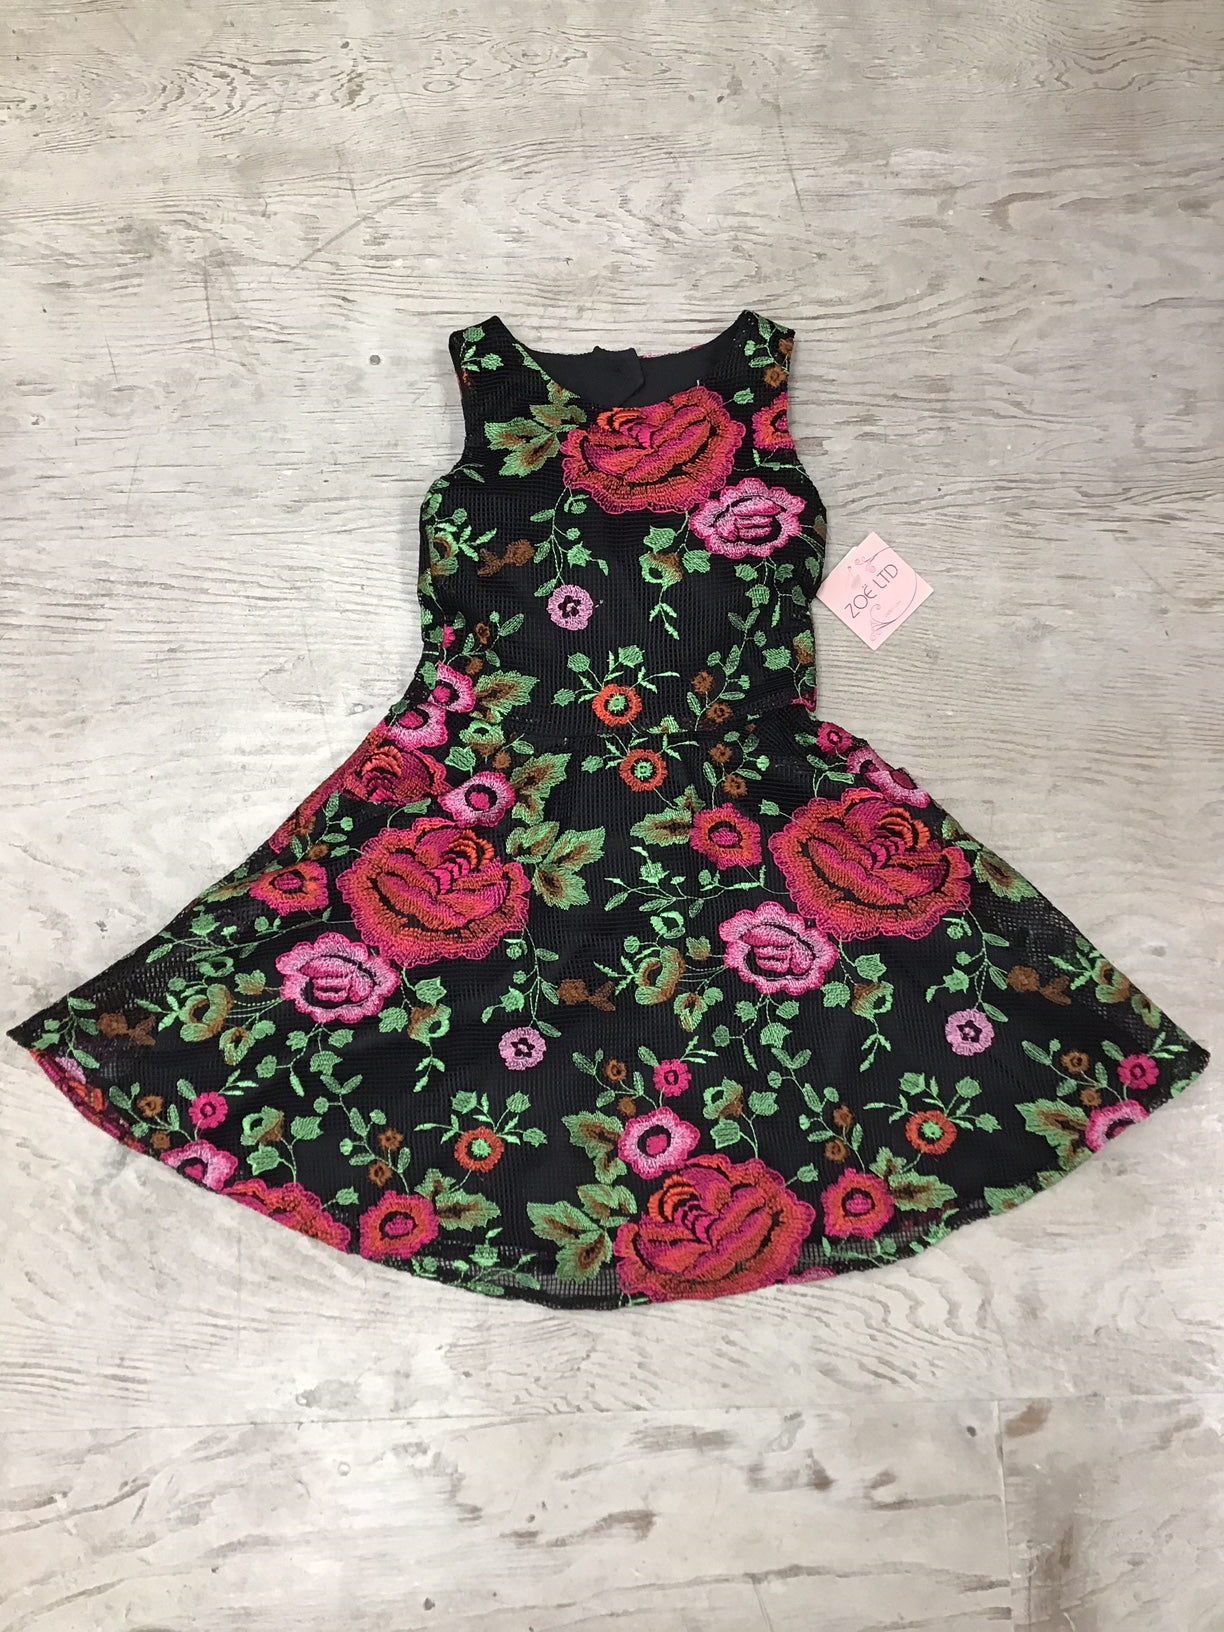 Elegant rosette dress by Zoe Ltd.